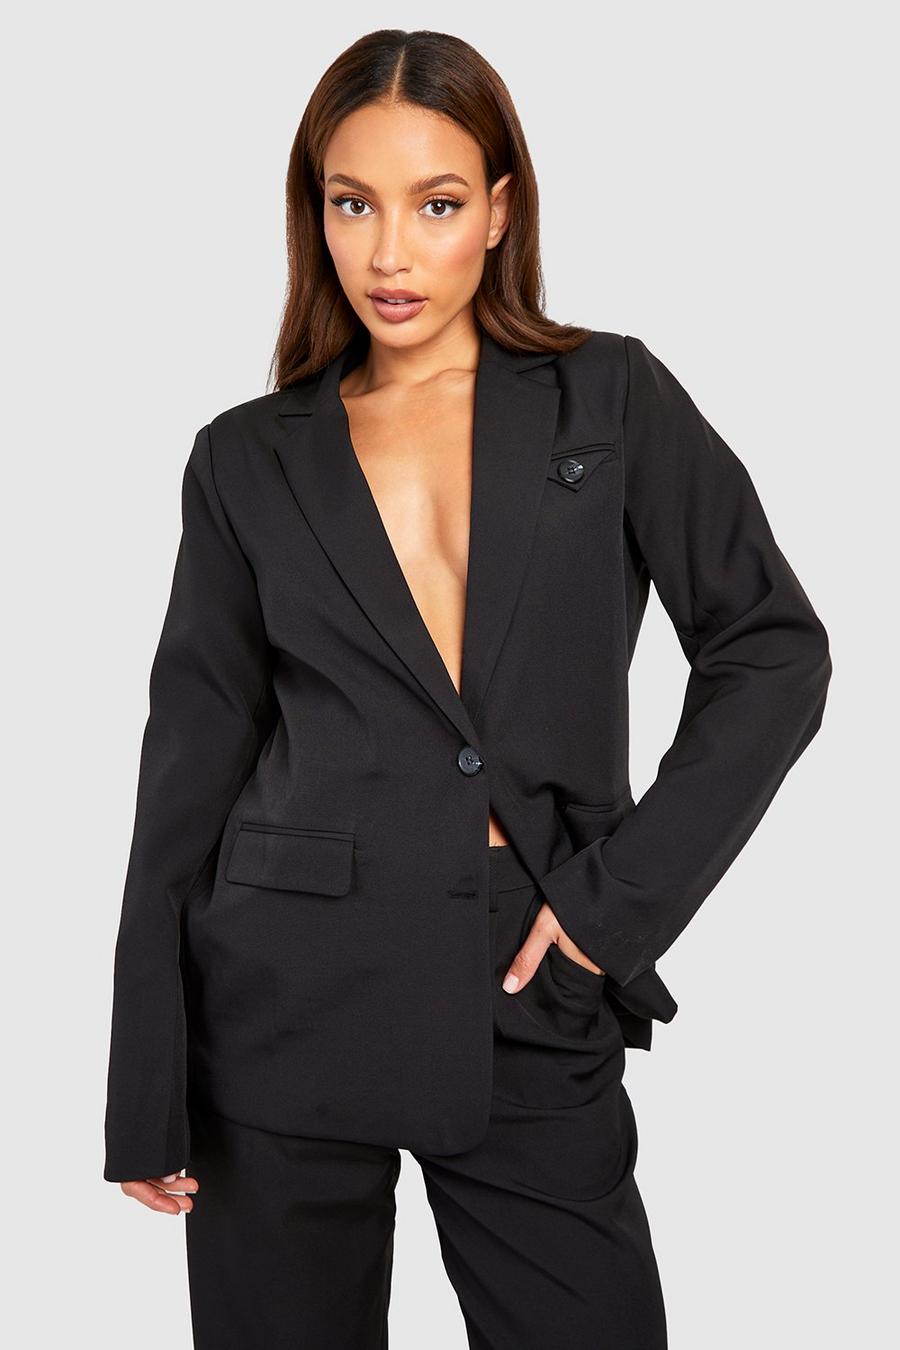 Womens Black Suit 